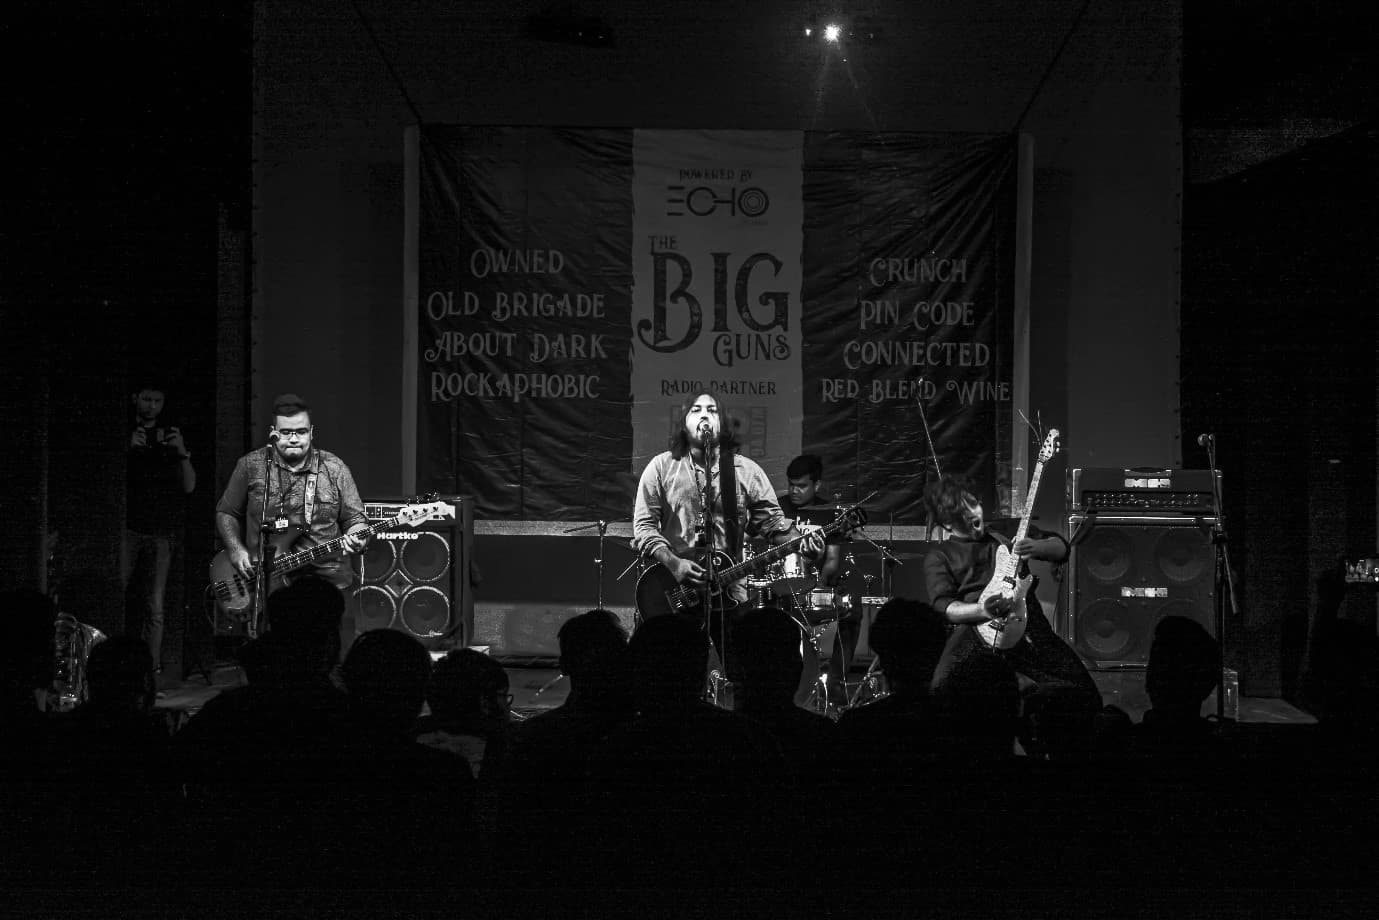 Old Brigade performing at The Big Guns gig.